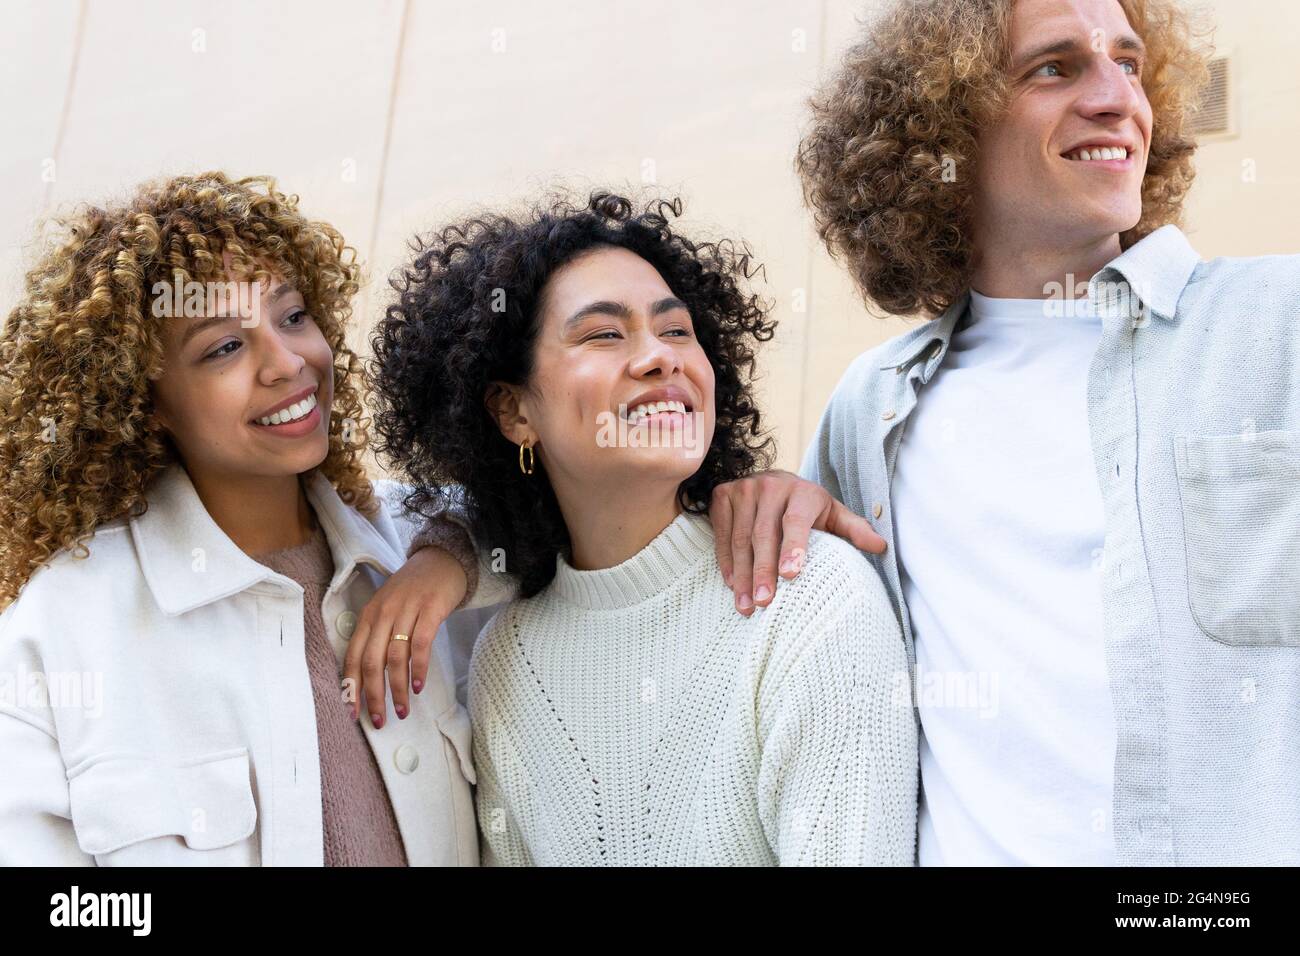 Divers hommes et femmes avec des cheveux bouclés debout regardant loin rire sur fond beige Banque D'Images